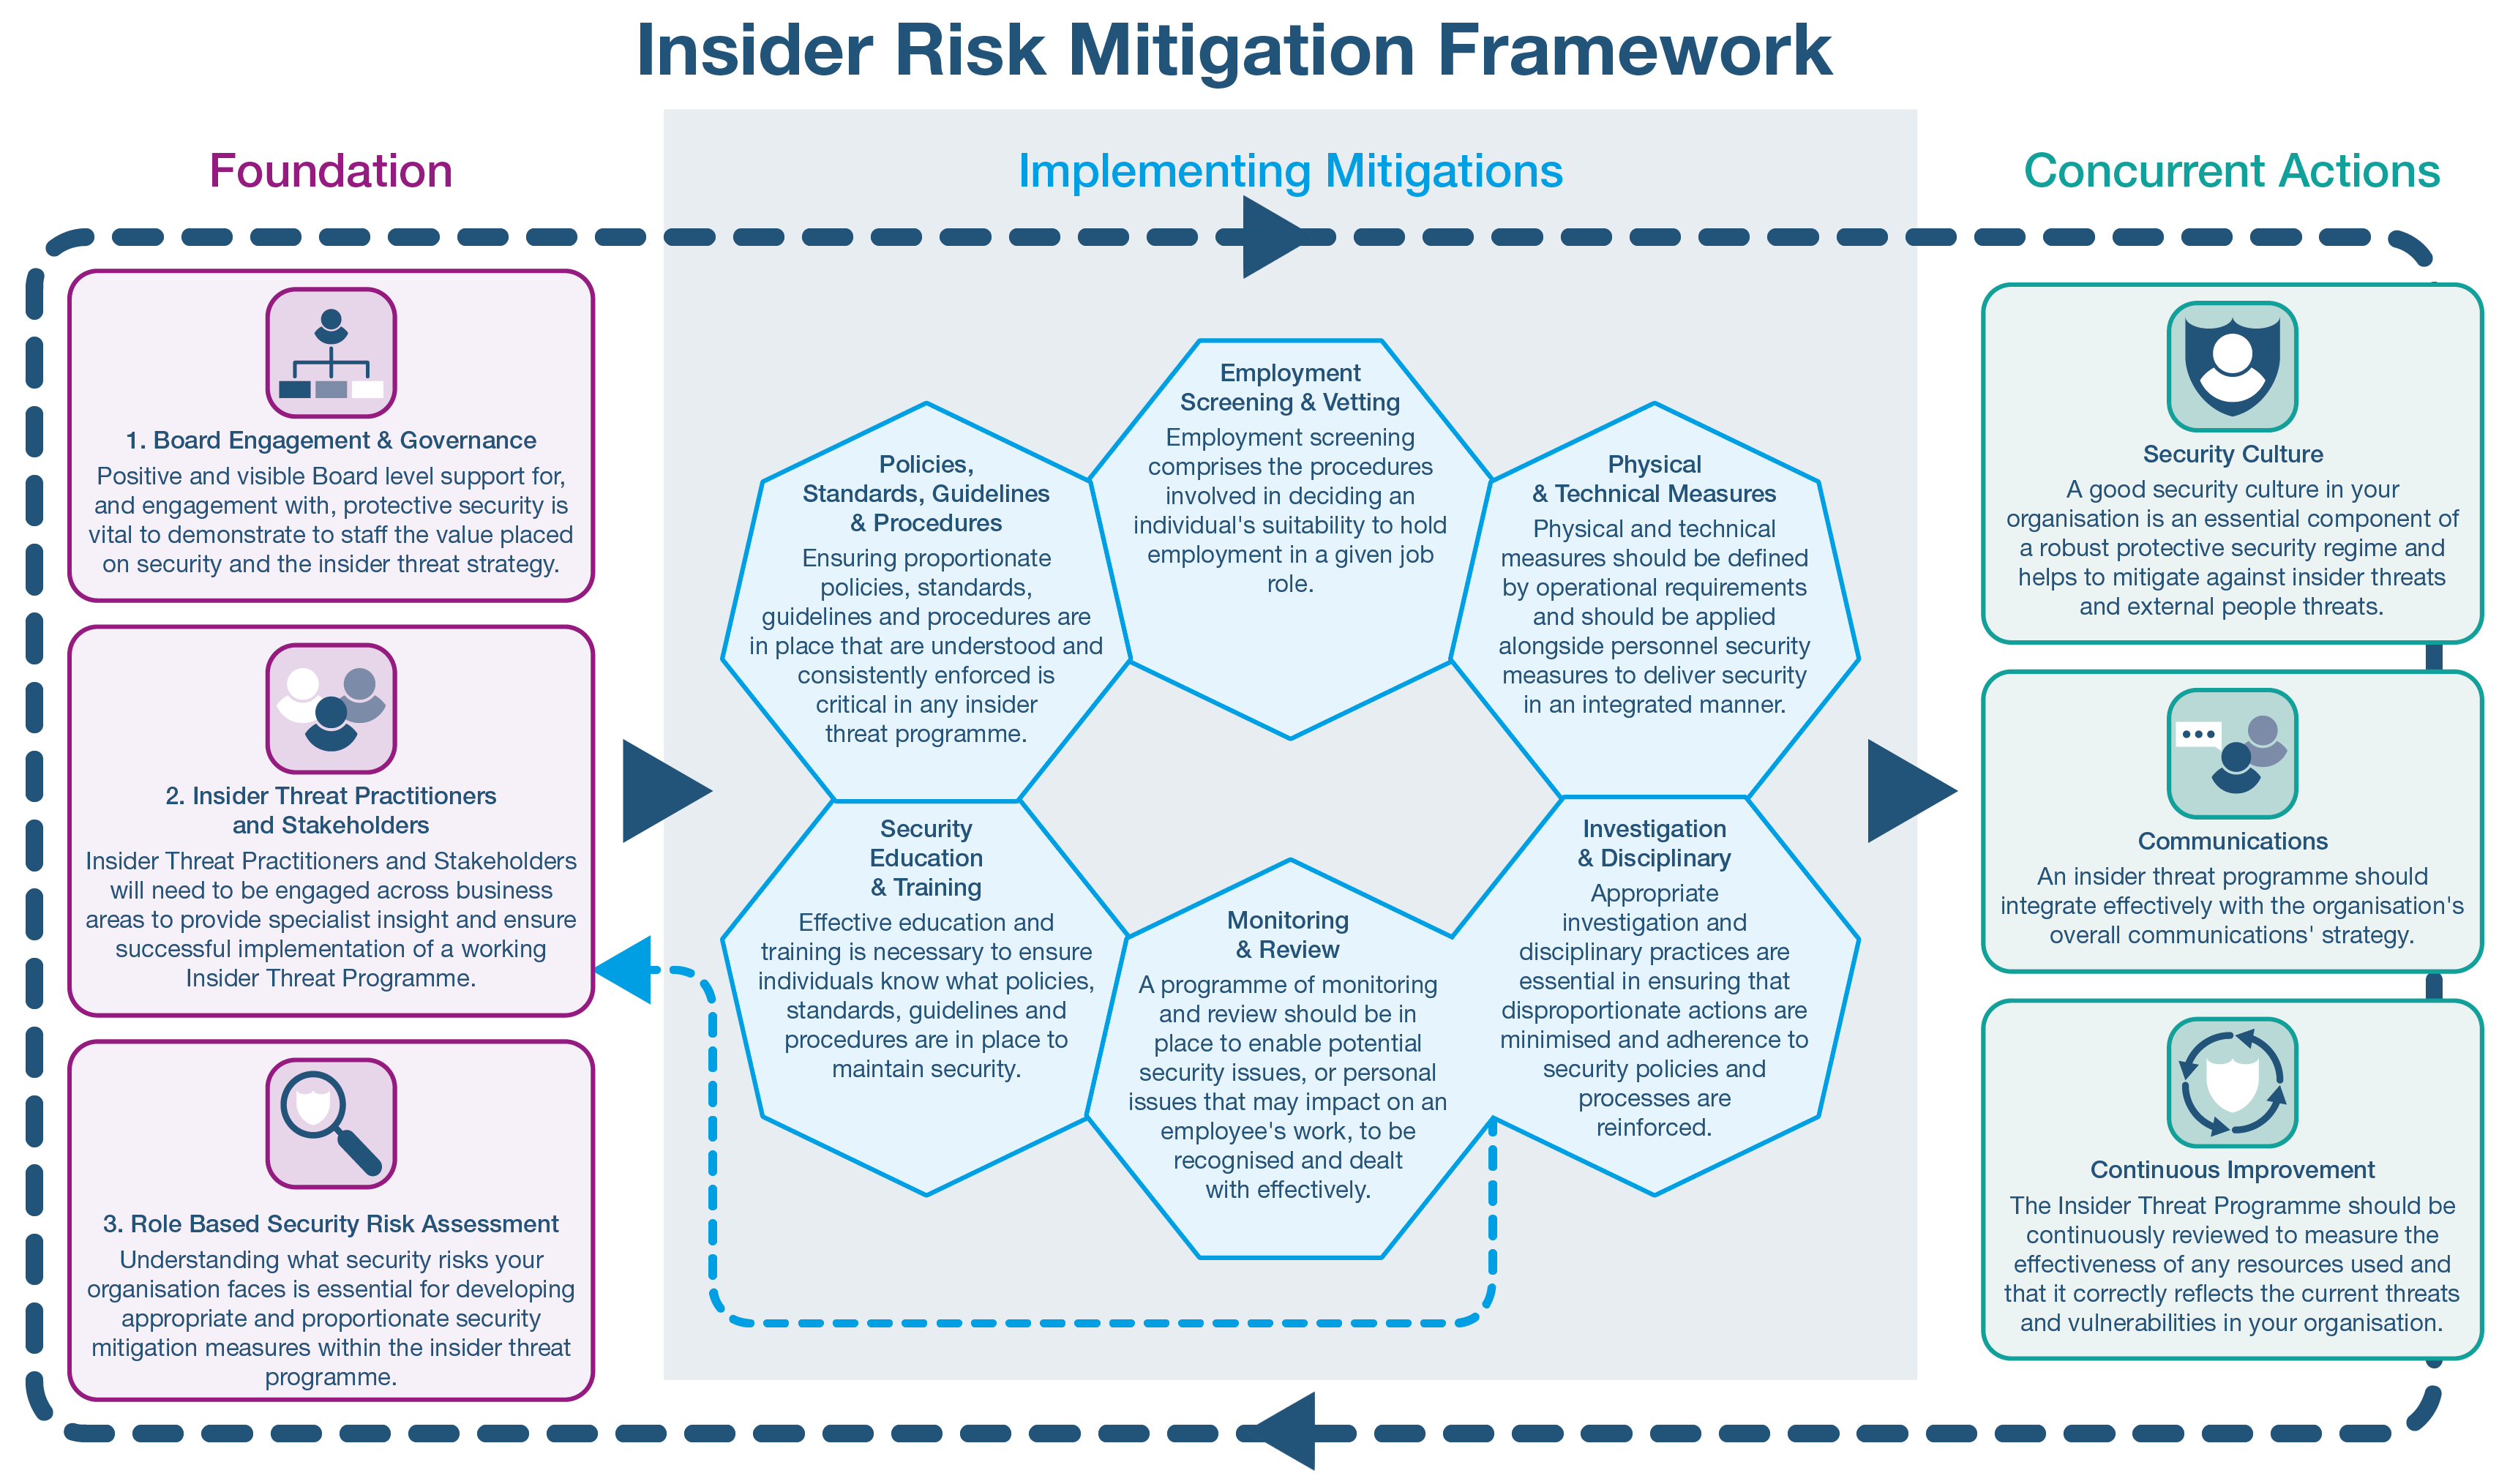 Insider Risk Mitigation Framework image